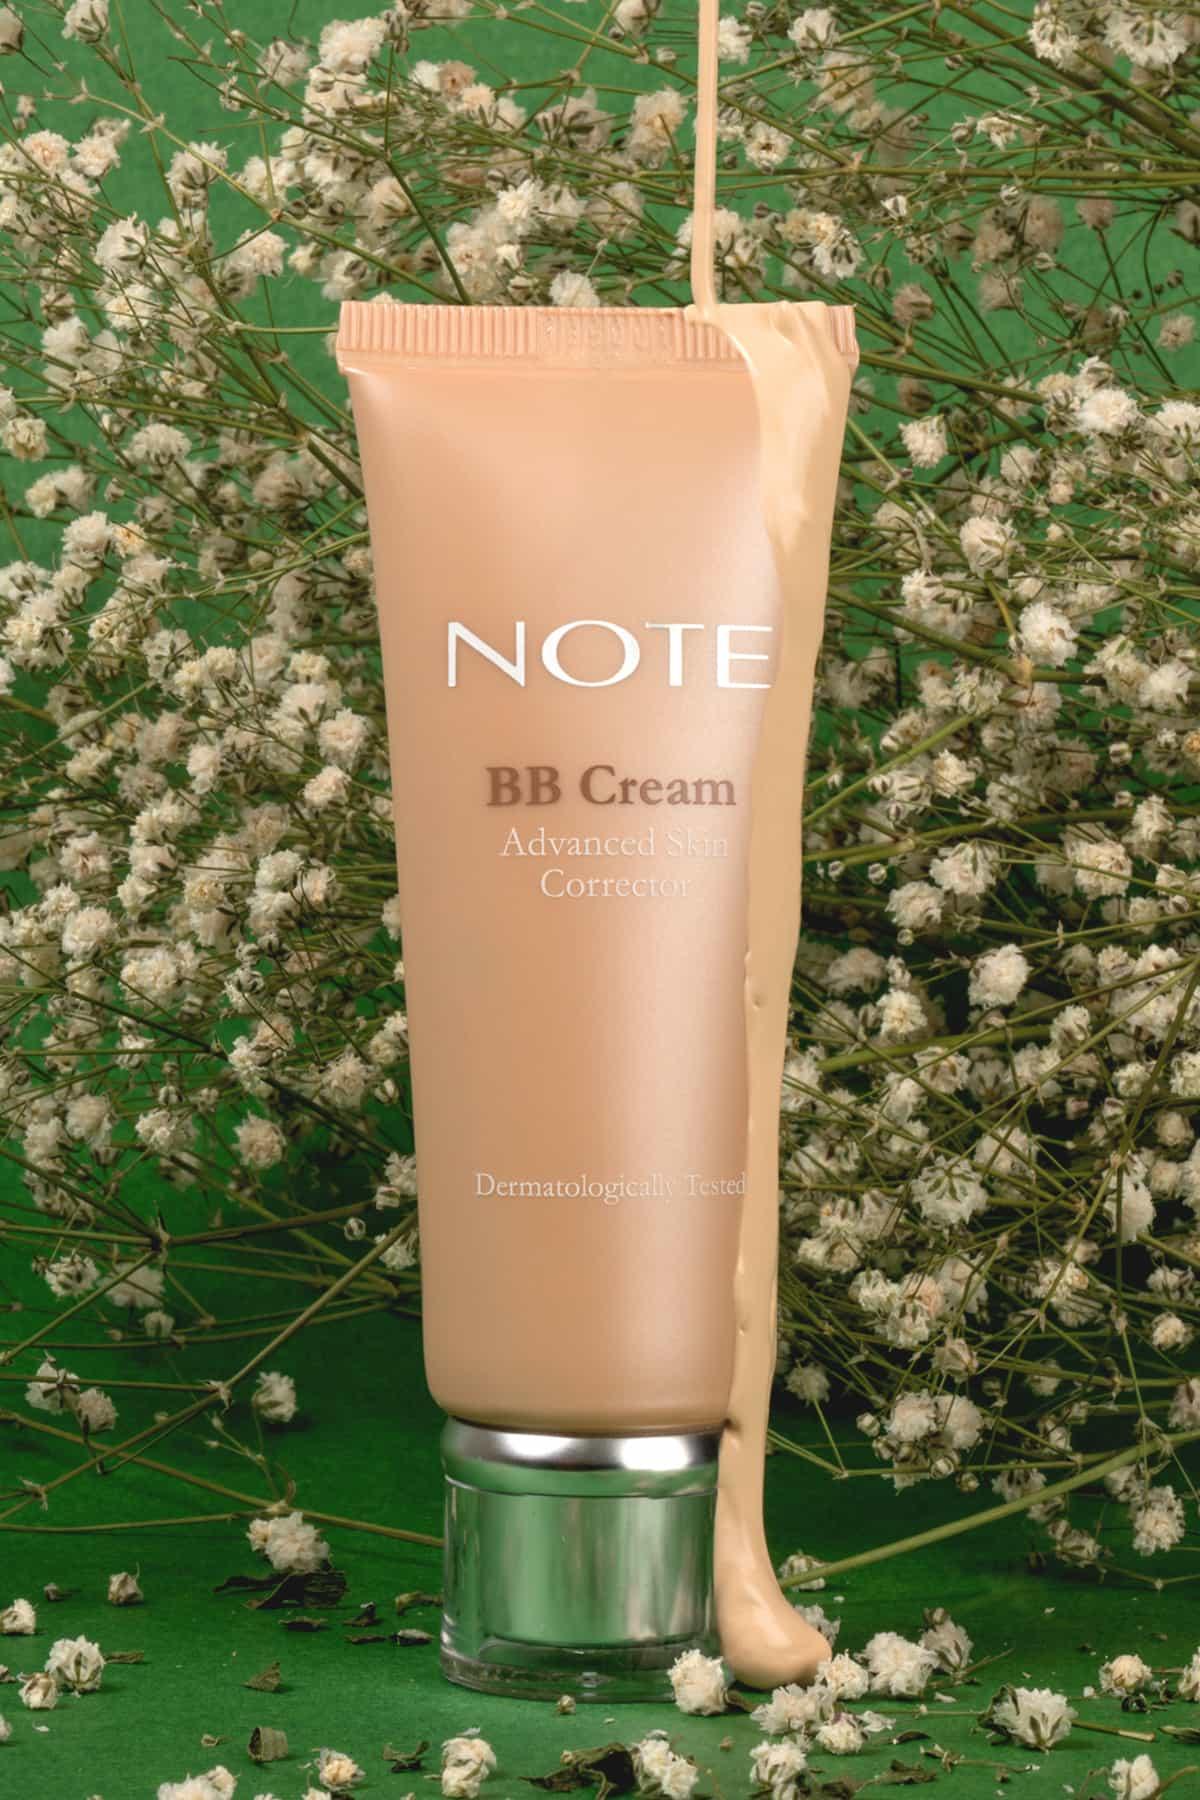 Note BB Cream - BB Krem Doğal Kapatıcılık 300 Light Beige | Note Cosmetique